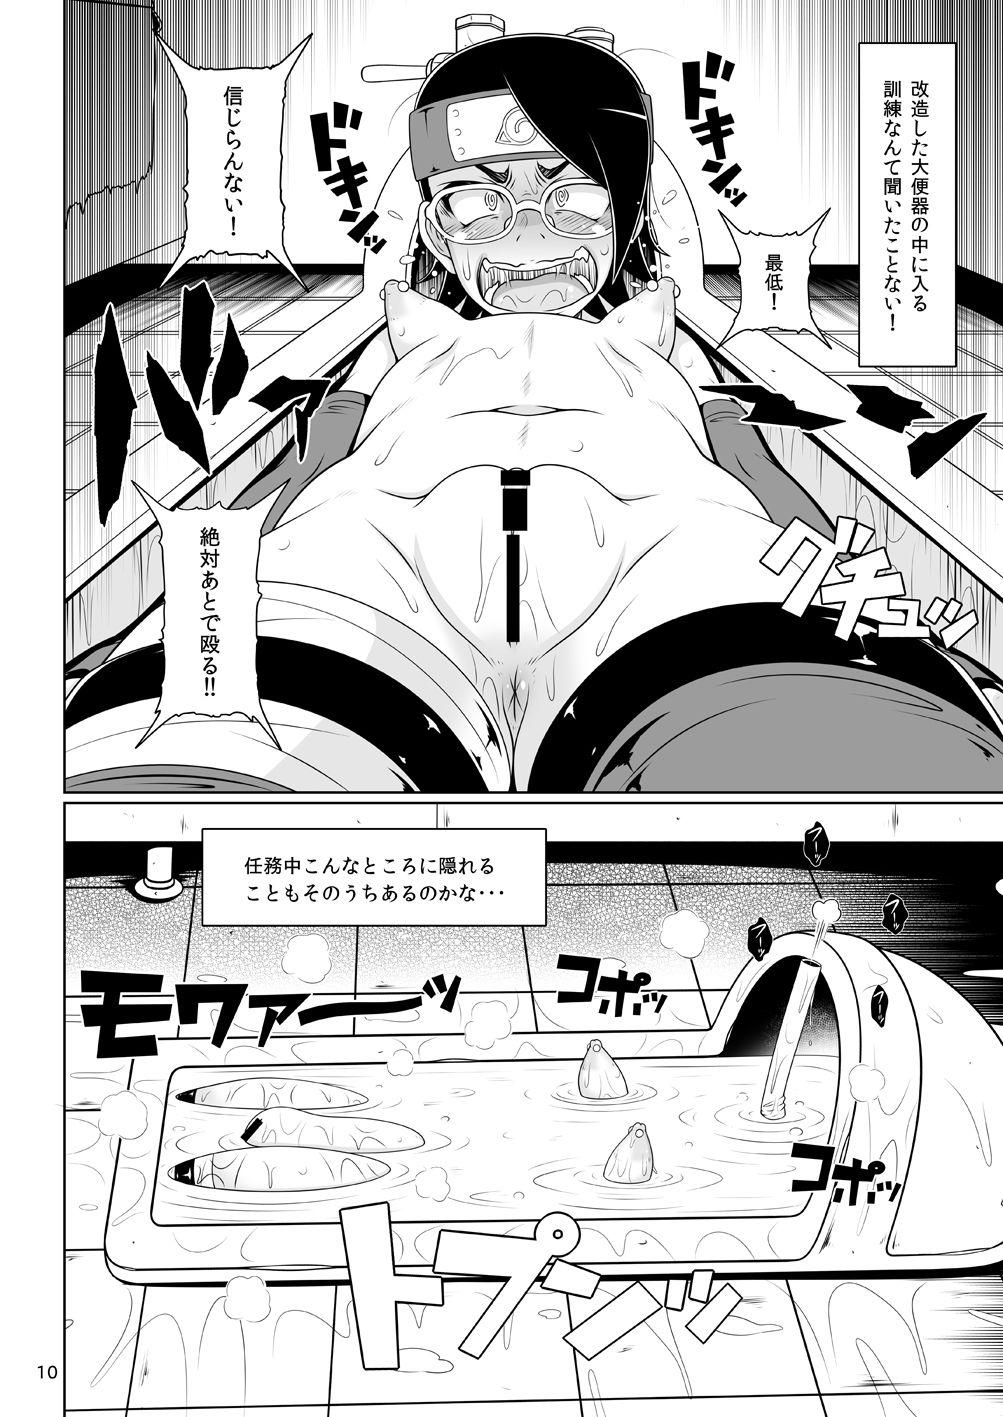 Sextoy Shino Bitch 2 - Boruto Chudai - Page 10